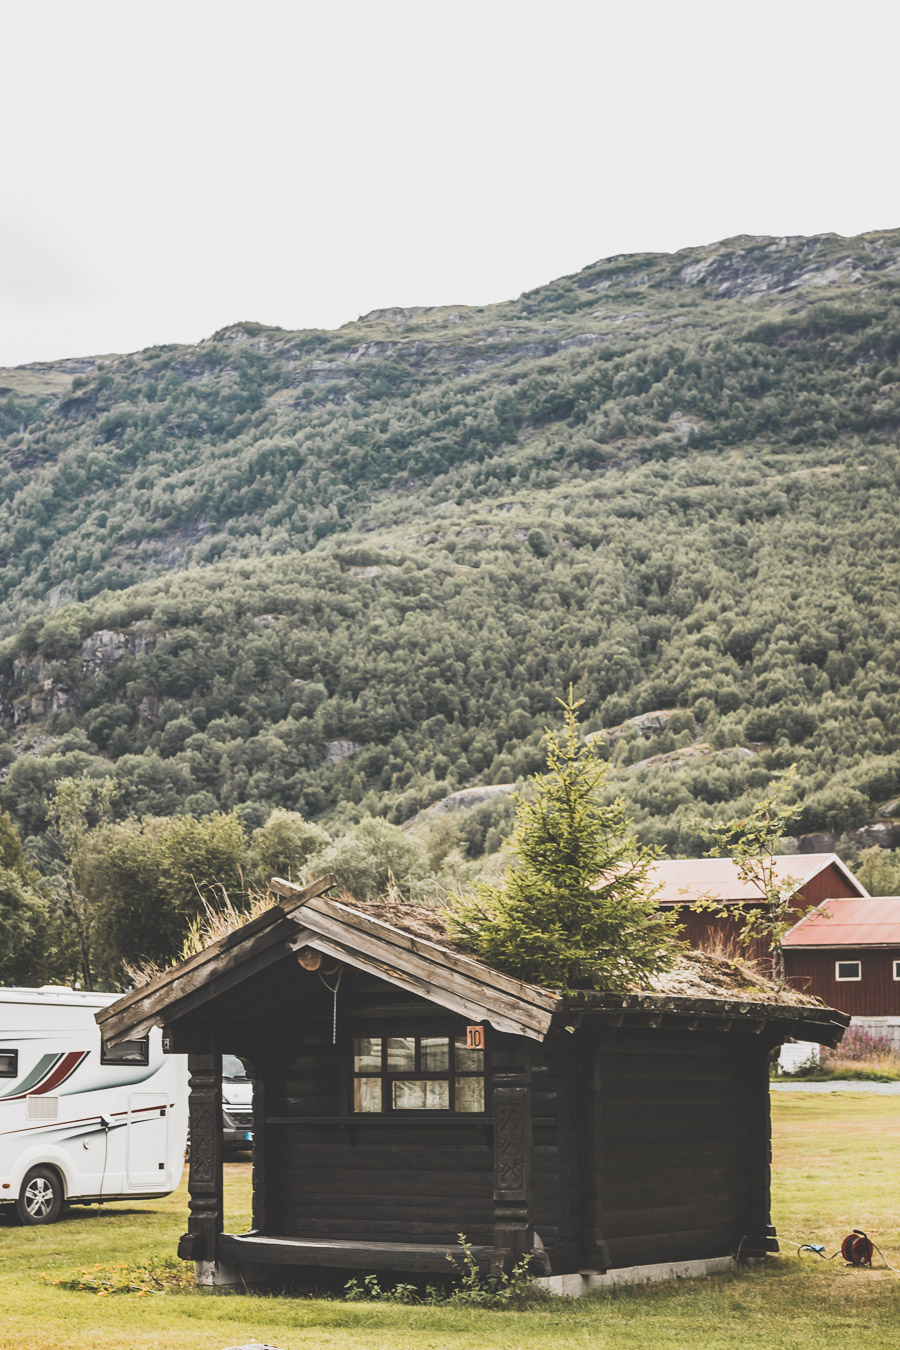 Tu souhaites organiser un road trip dans la région des fjords de Norvège ? Suis notre guide et trouve toutes les informations utiles. #norvège #vacances Voyage en Europe / Vacances Europe / Destinations de voyages / Bucket list travel / Idées de voyages / Europe travel / Scandinavie paysage / road trip norvege sud / Scandinavia / norvege paysage / norvege voyage / norvege aesthetic / Norvège fjord / road trip norvege été / road trip en norvege / road trip van norvege / norvege van / norvege sud